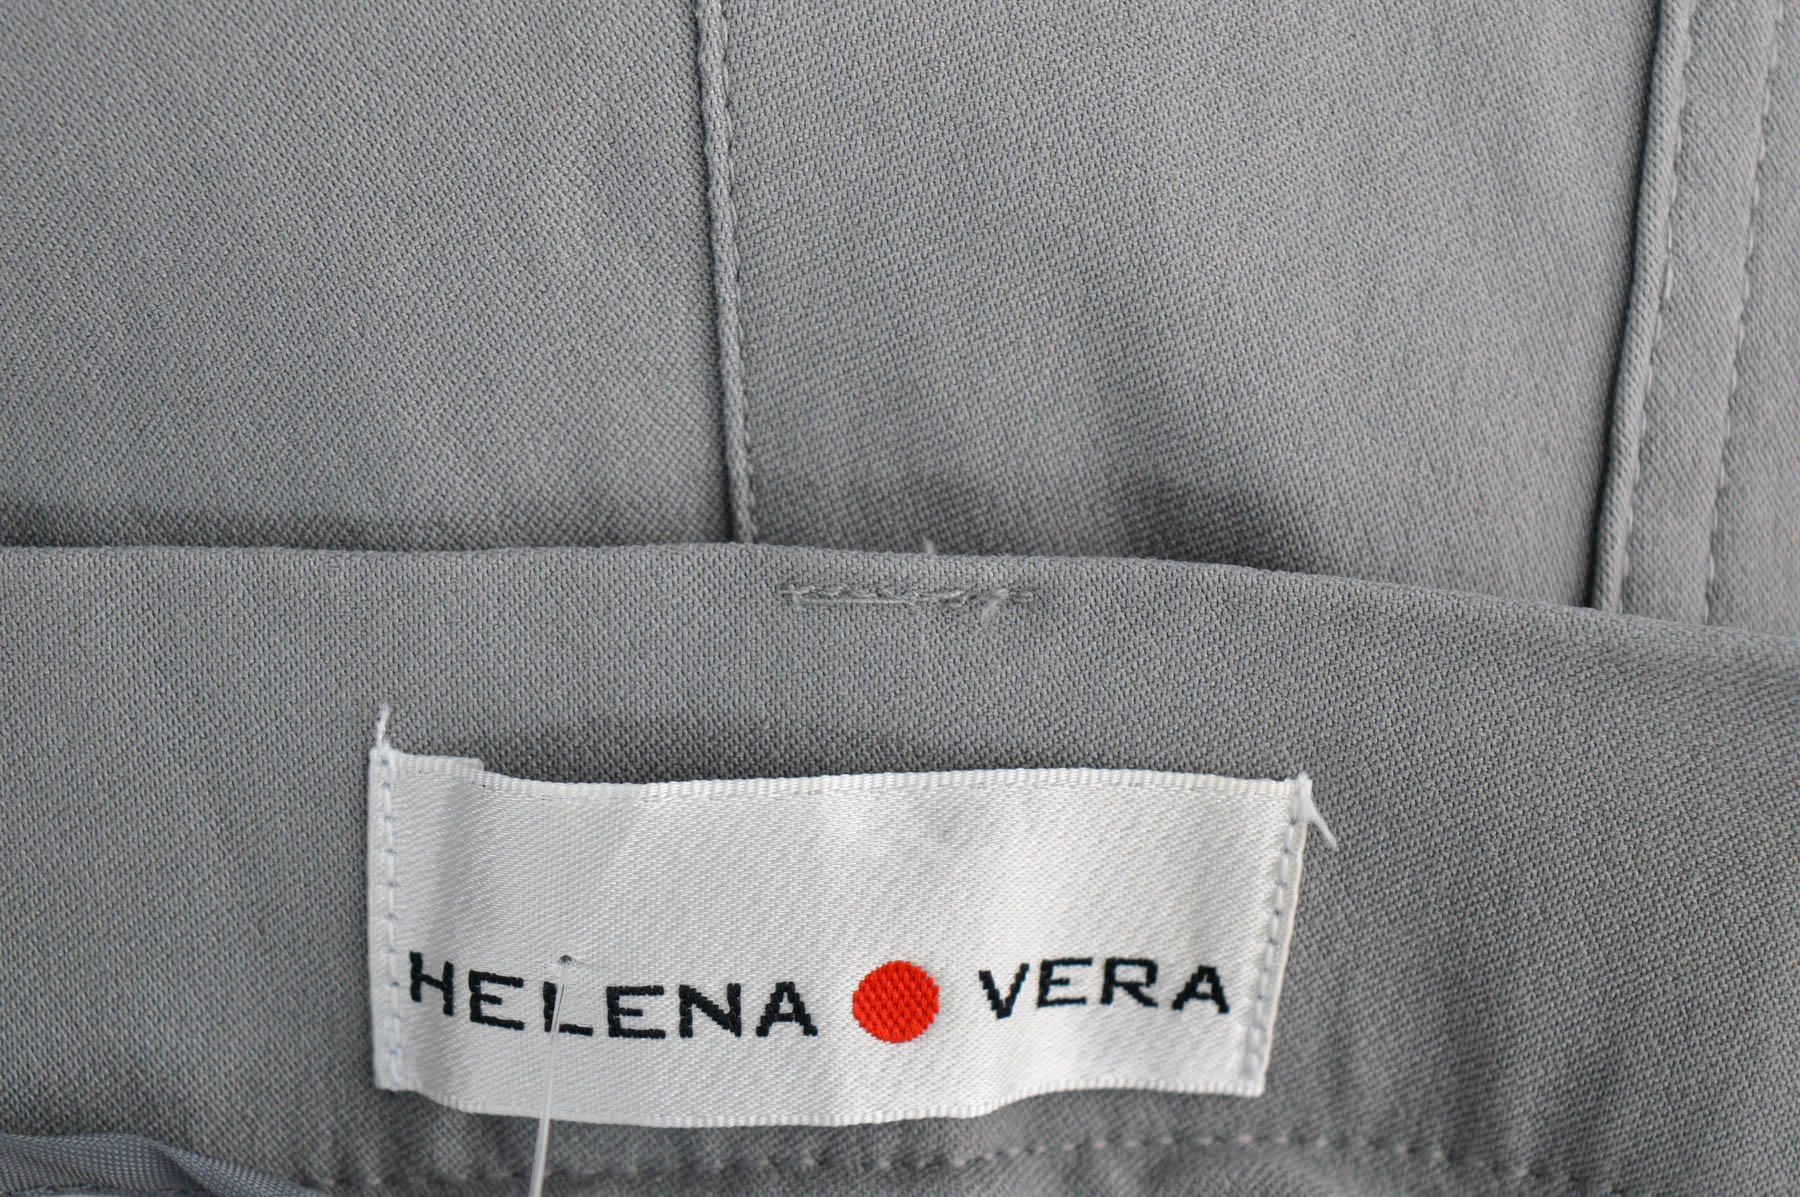 Spodnie damskie - Helena Vera - 2